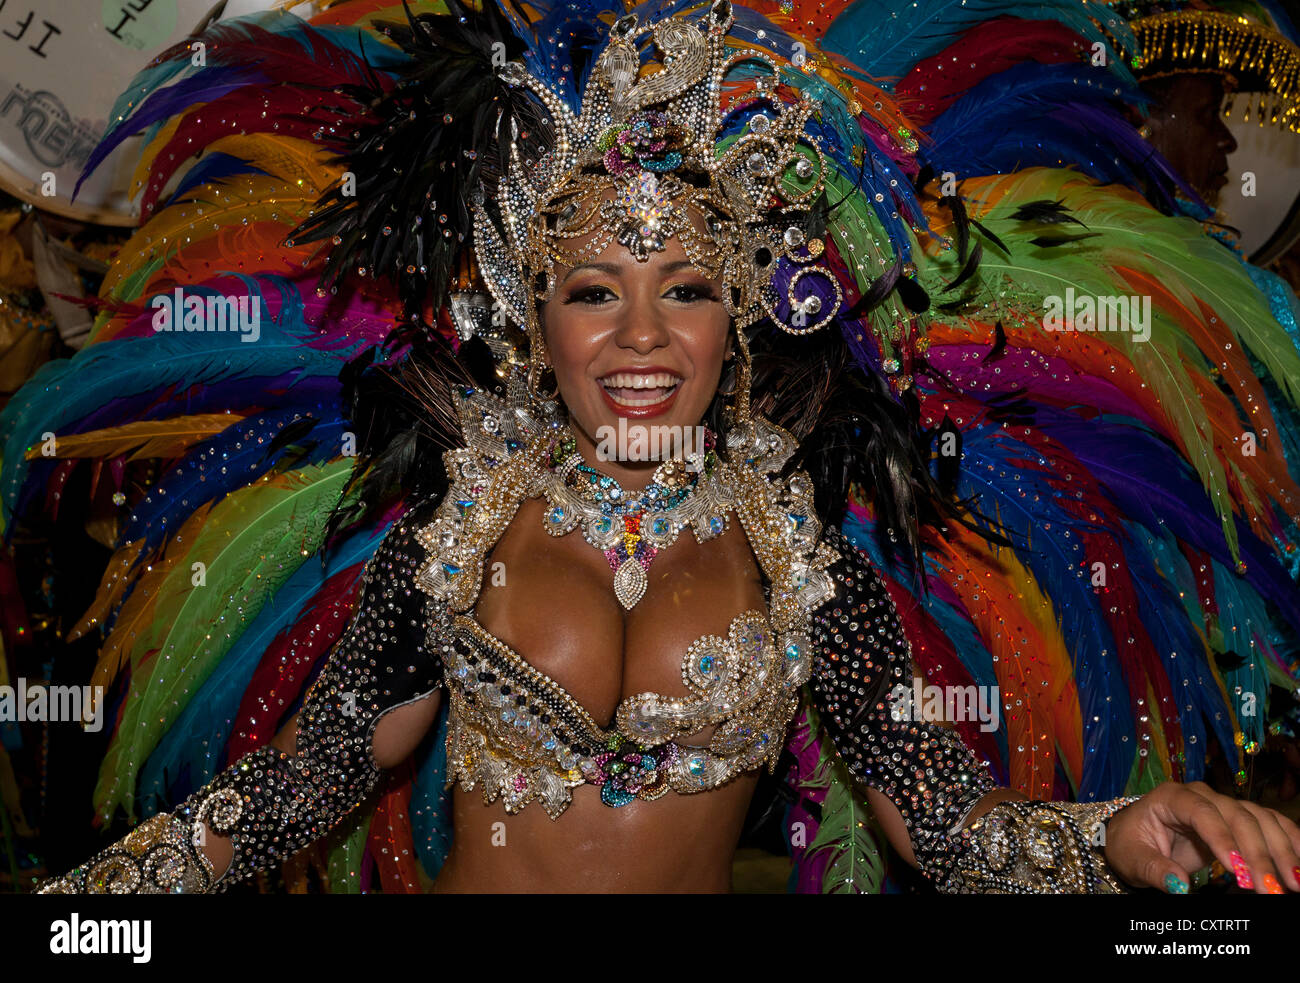 Woman in Colourful Costume Carnival Rio de Janeiro Brazil Stock Photo -  Alamy